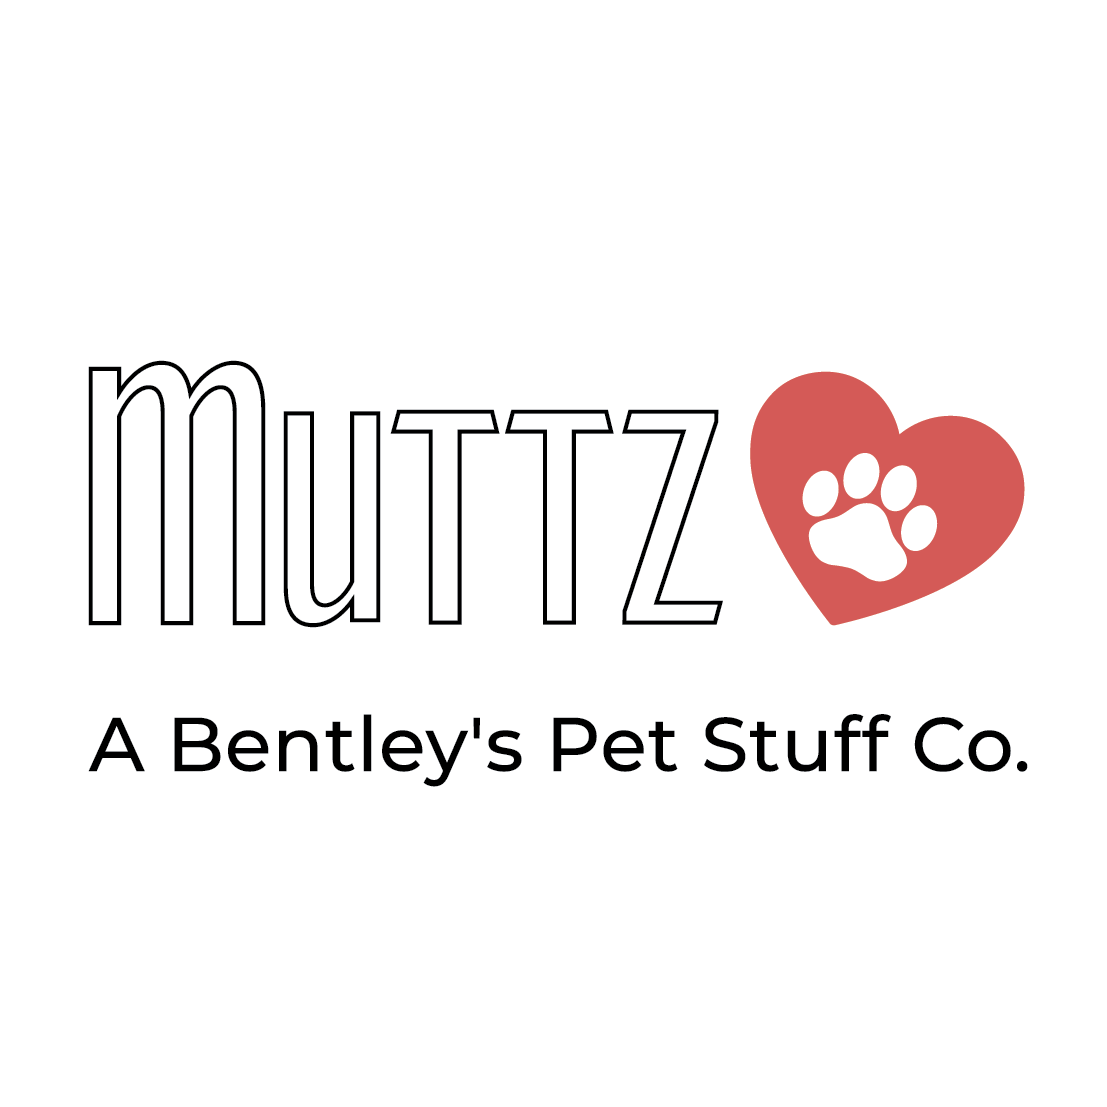 Muttz Natural Pet Goods